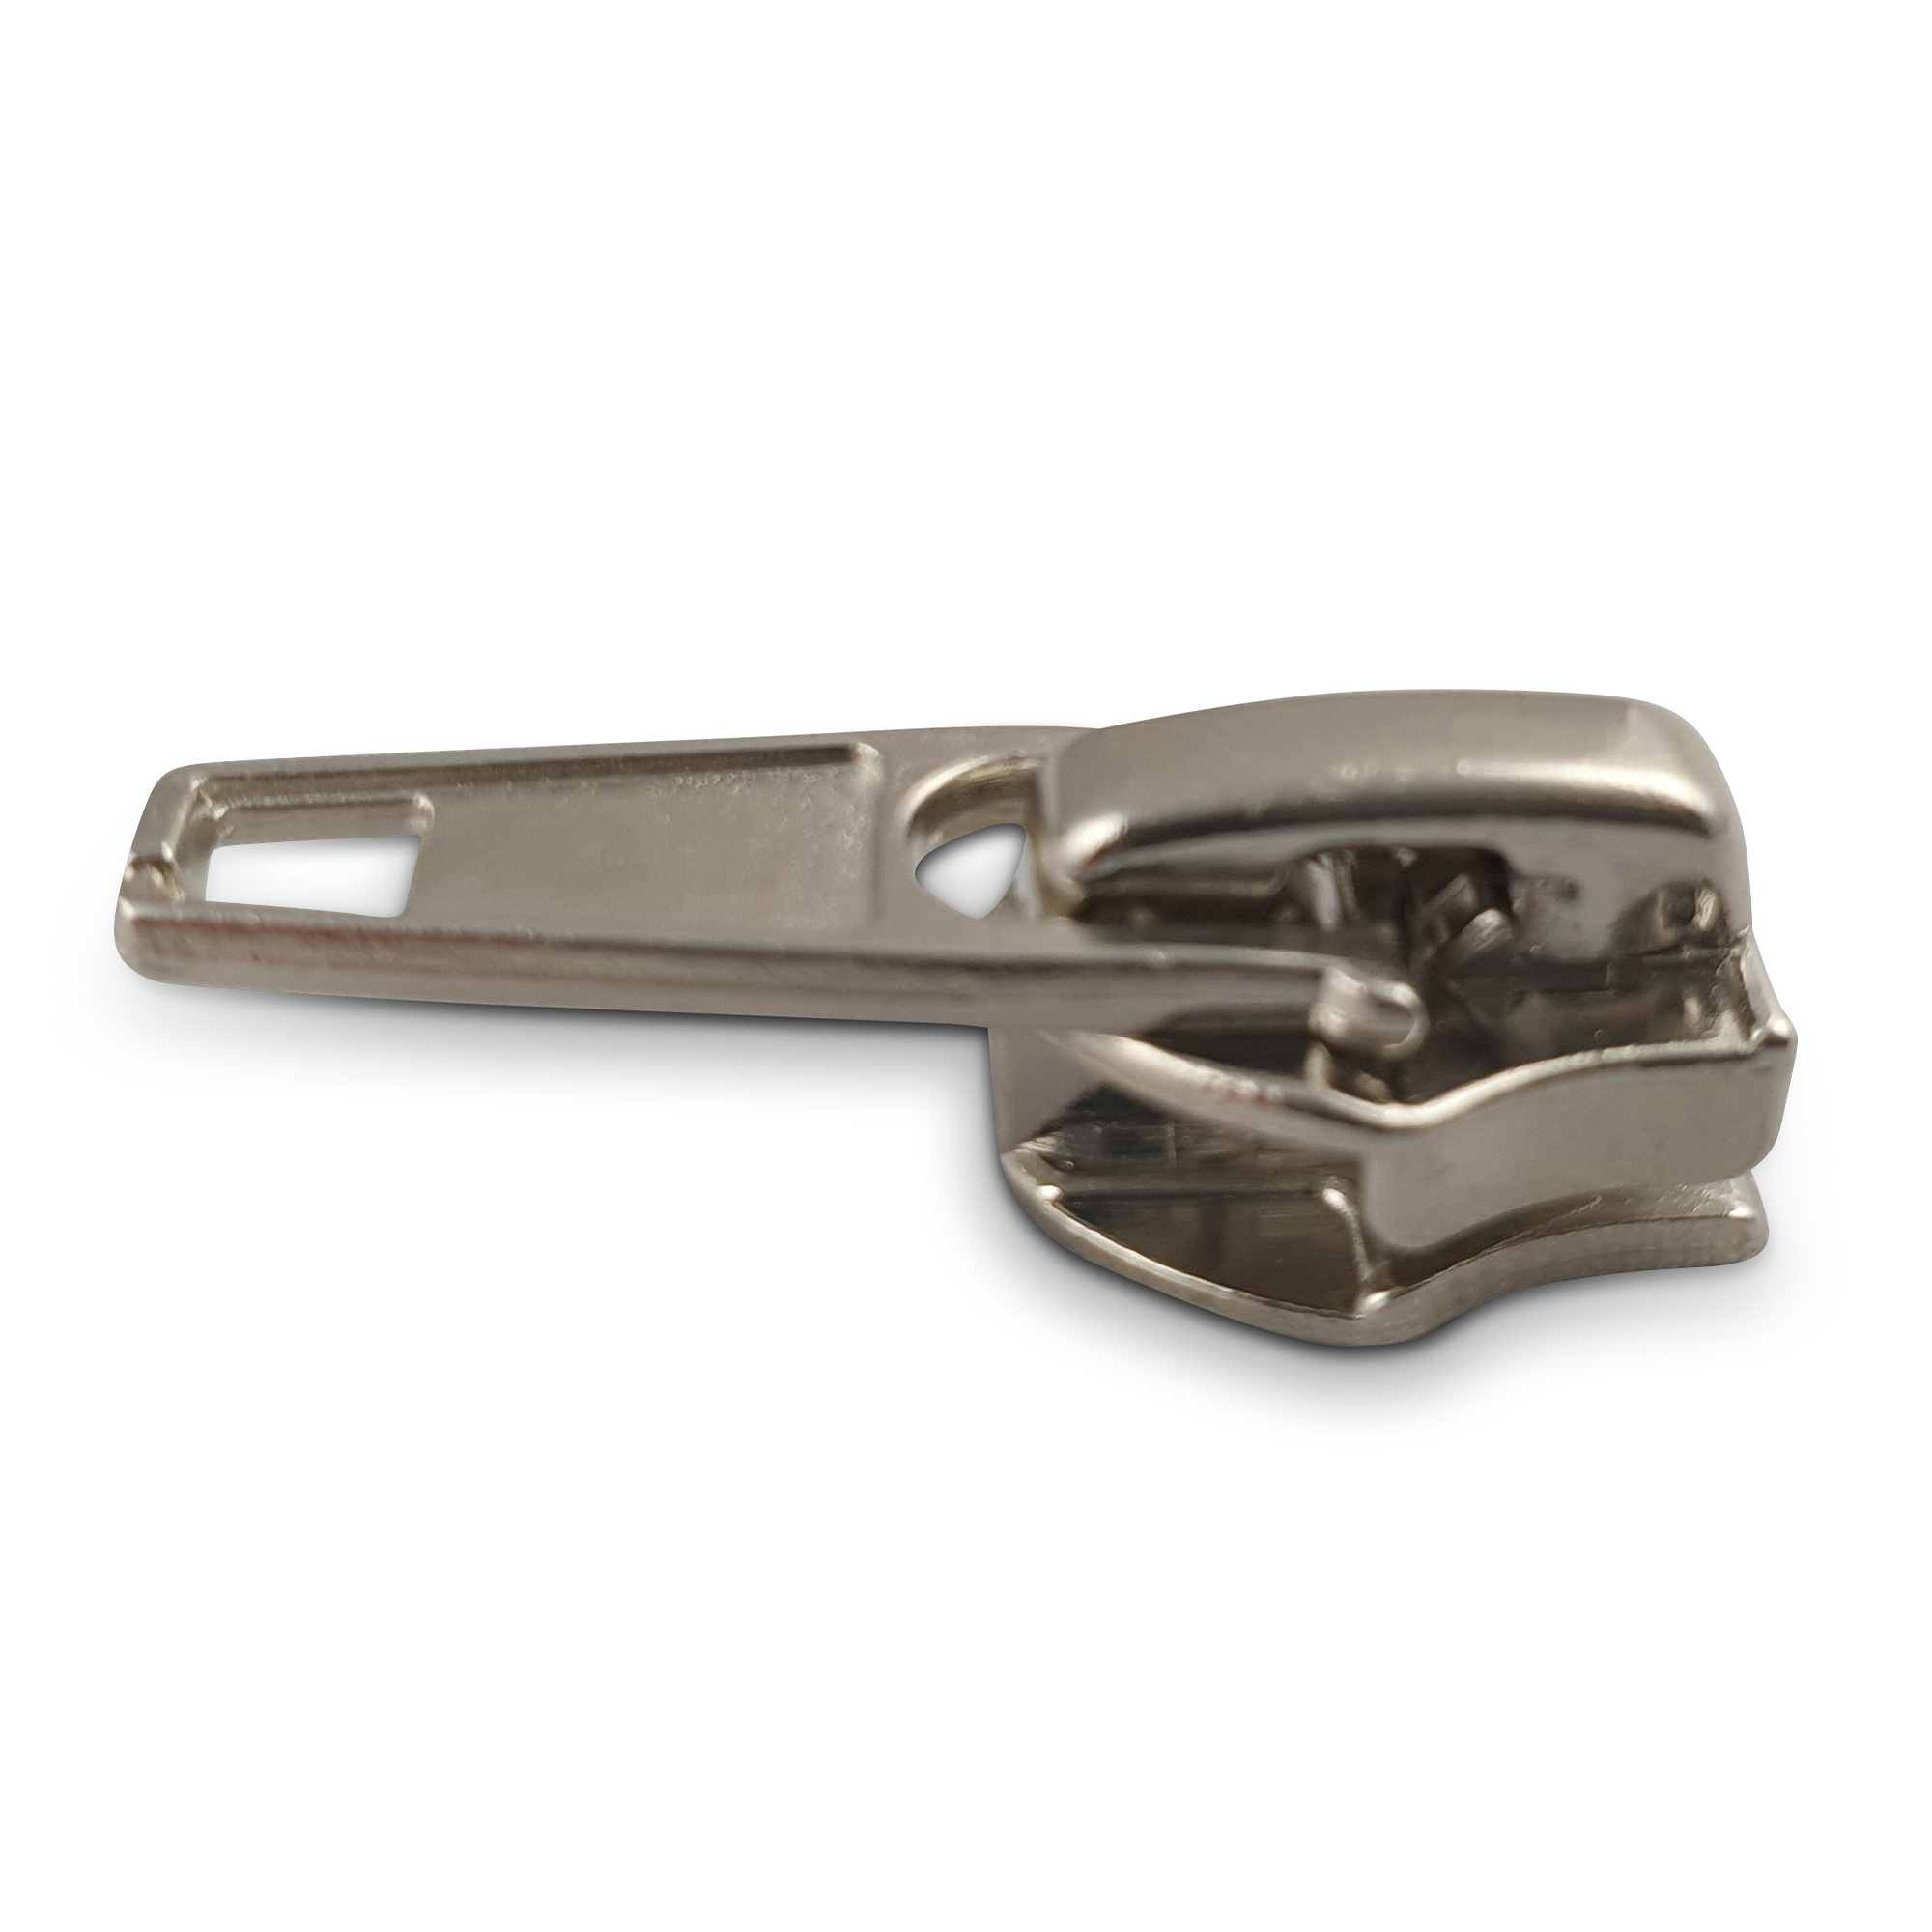 Schieber für Motorrad Reißverschlusss Metall- oder Kunststoffzähne 8mm silber , hochwertiger Marken-Reißverschluss von Rubi/Barcelona